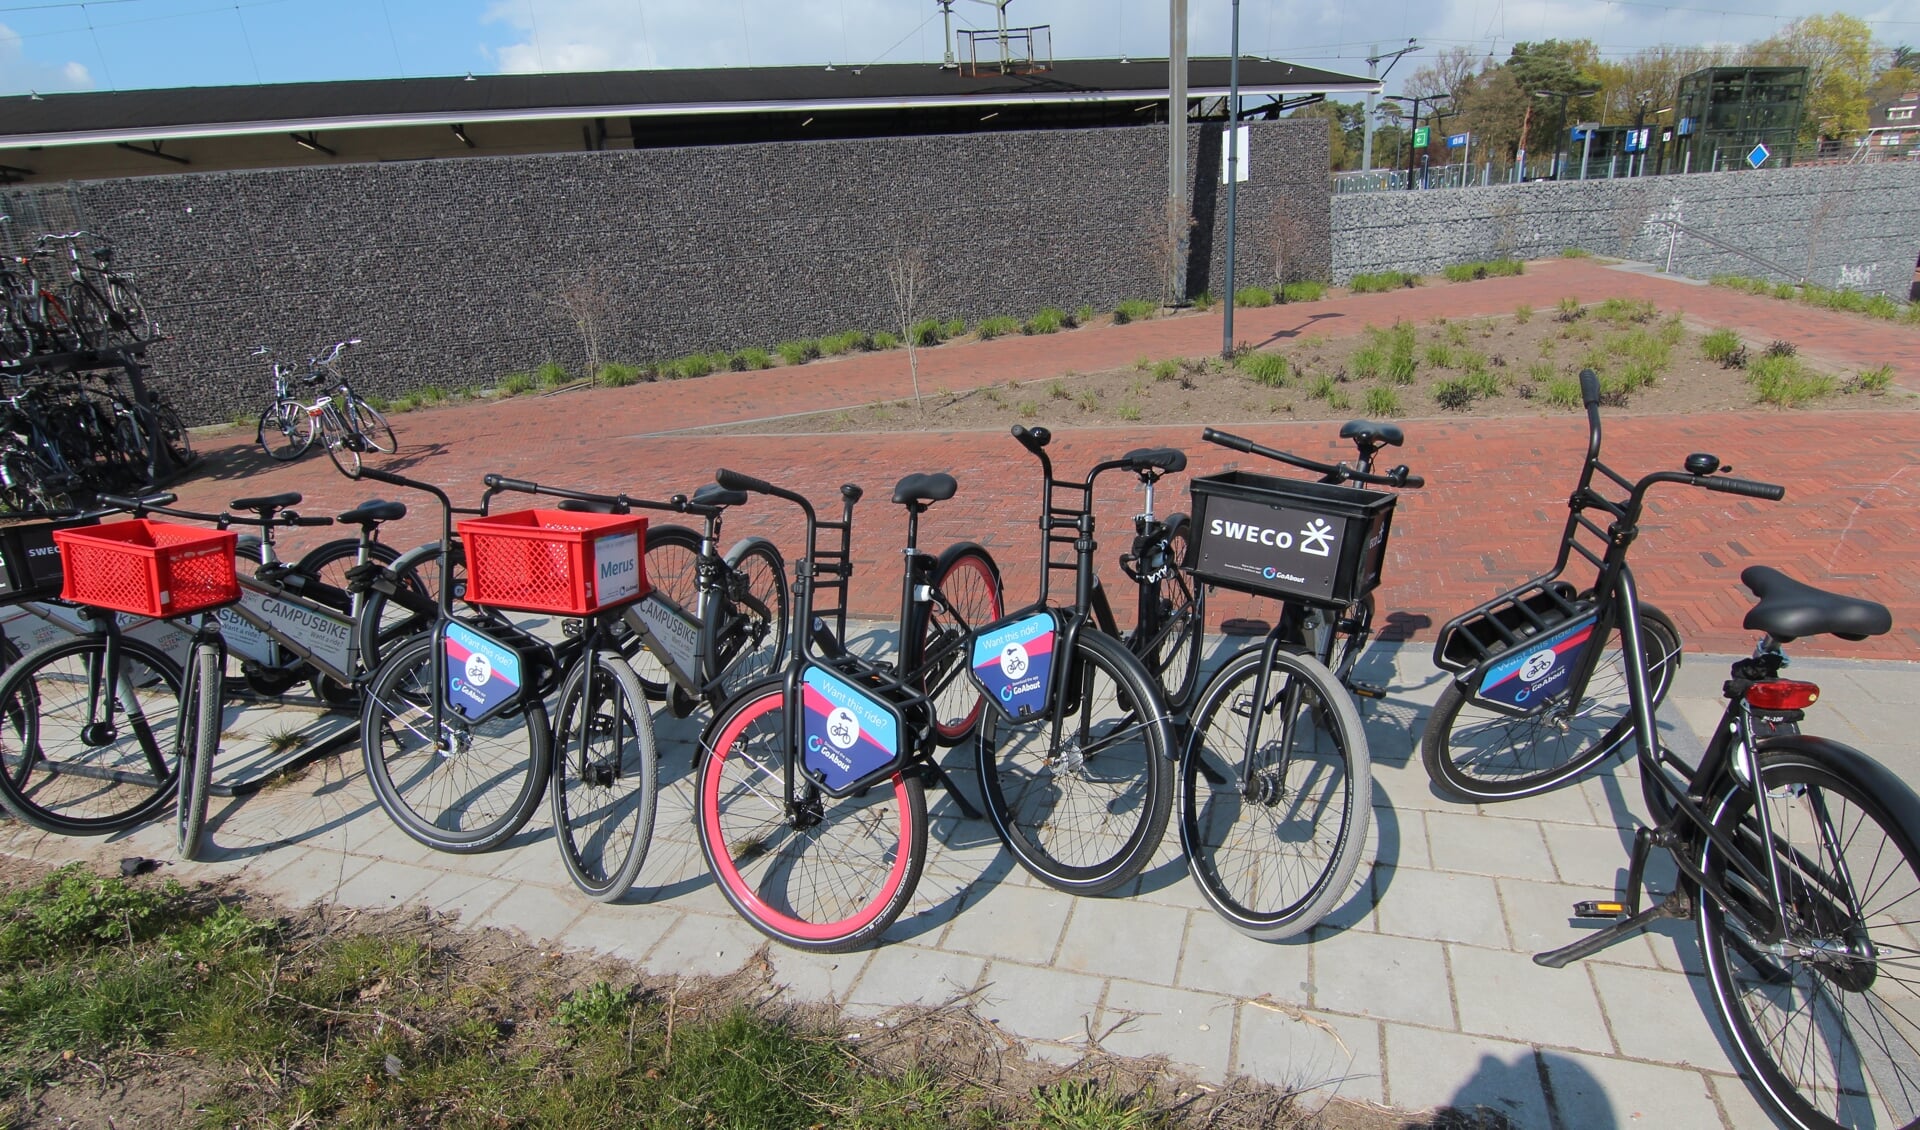 Er wordt gebruikgemaakt van bestaande fietsrekken, zoals bij het treinstation in Bilthoven, waar overigens een woud van fietsen en aanbieders is te vinden.